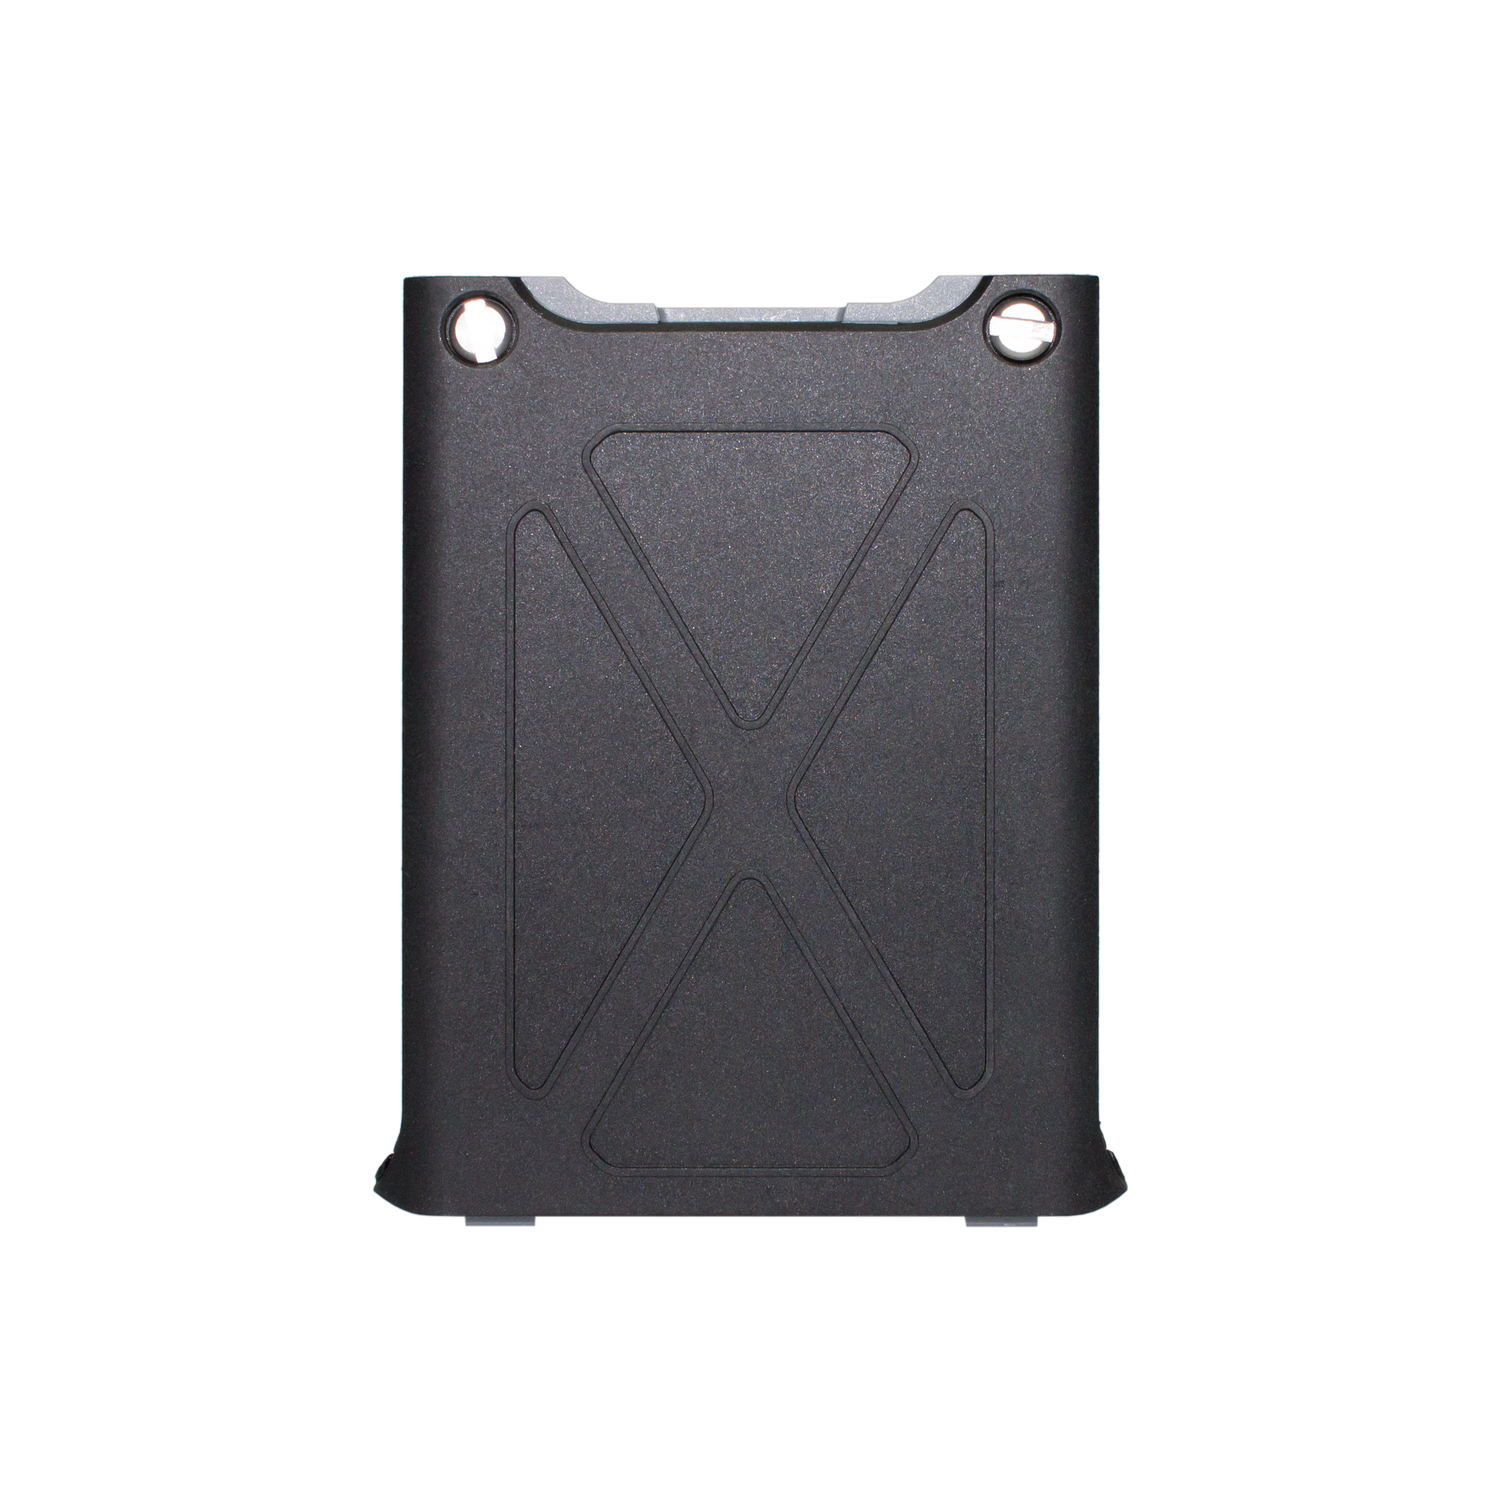 Sonim XP5s battery door. 